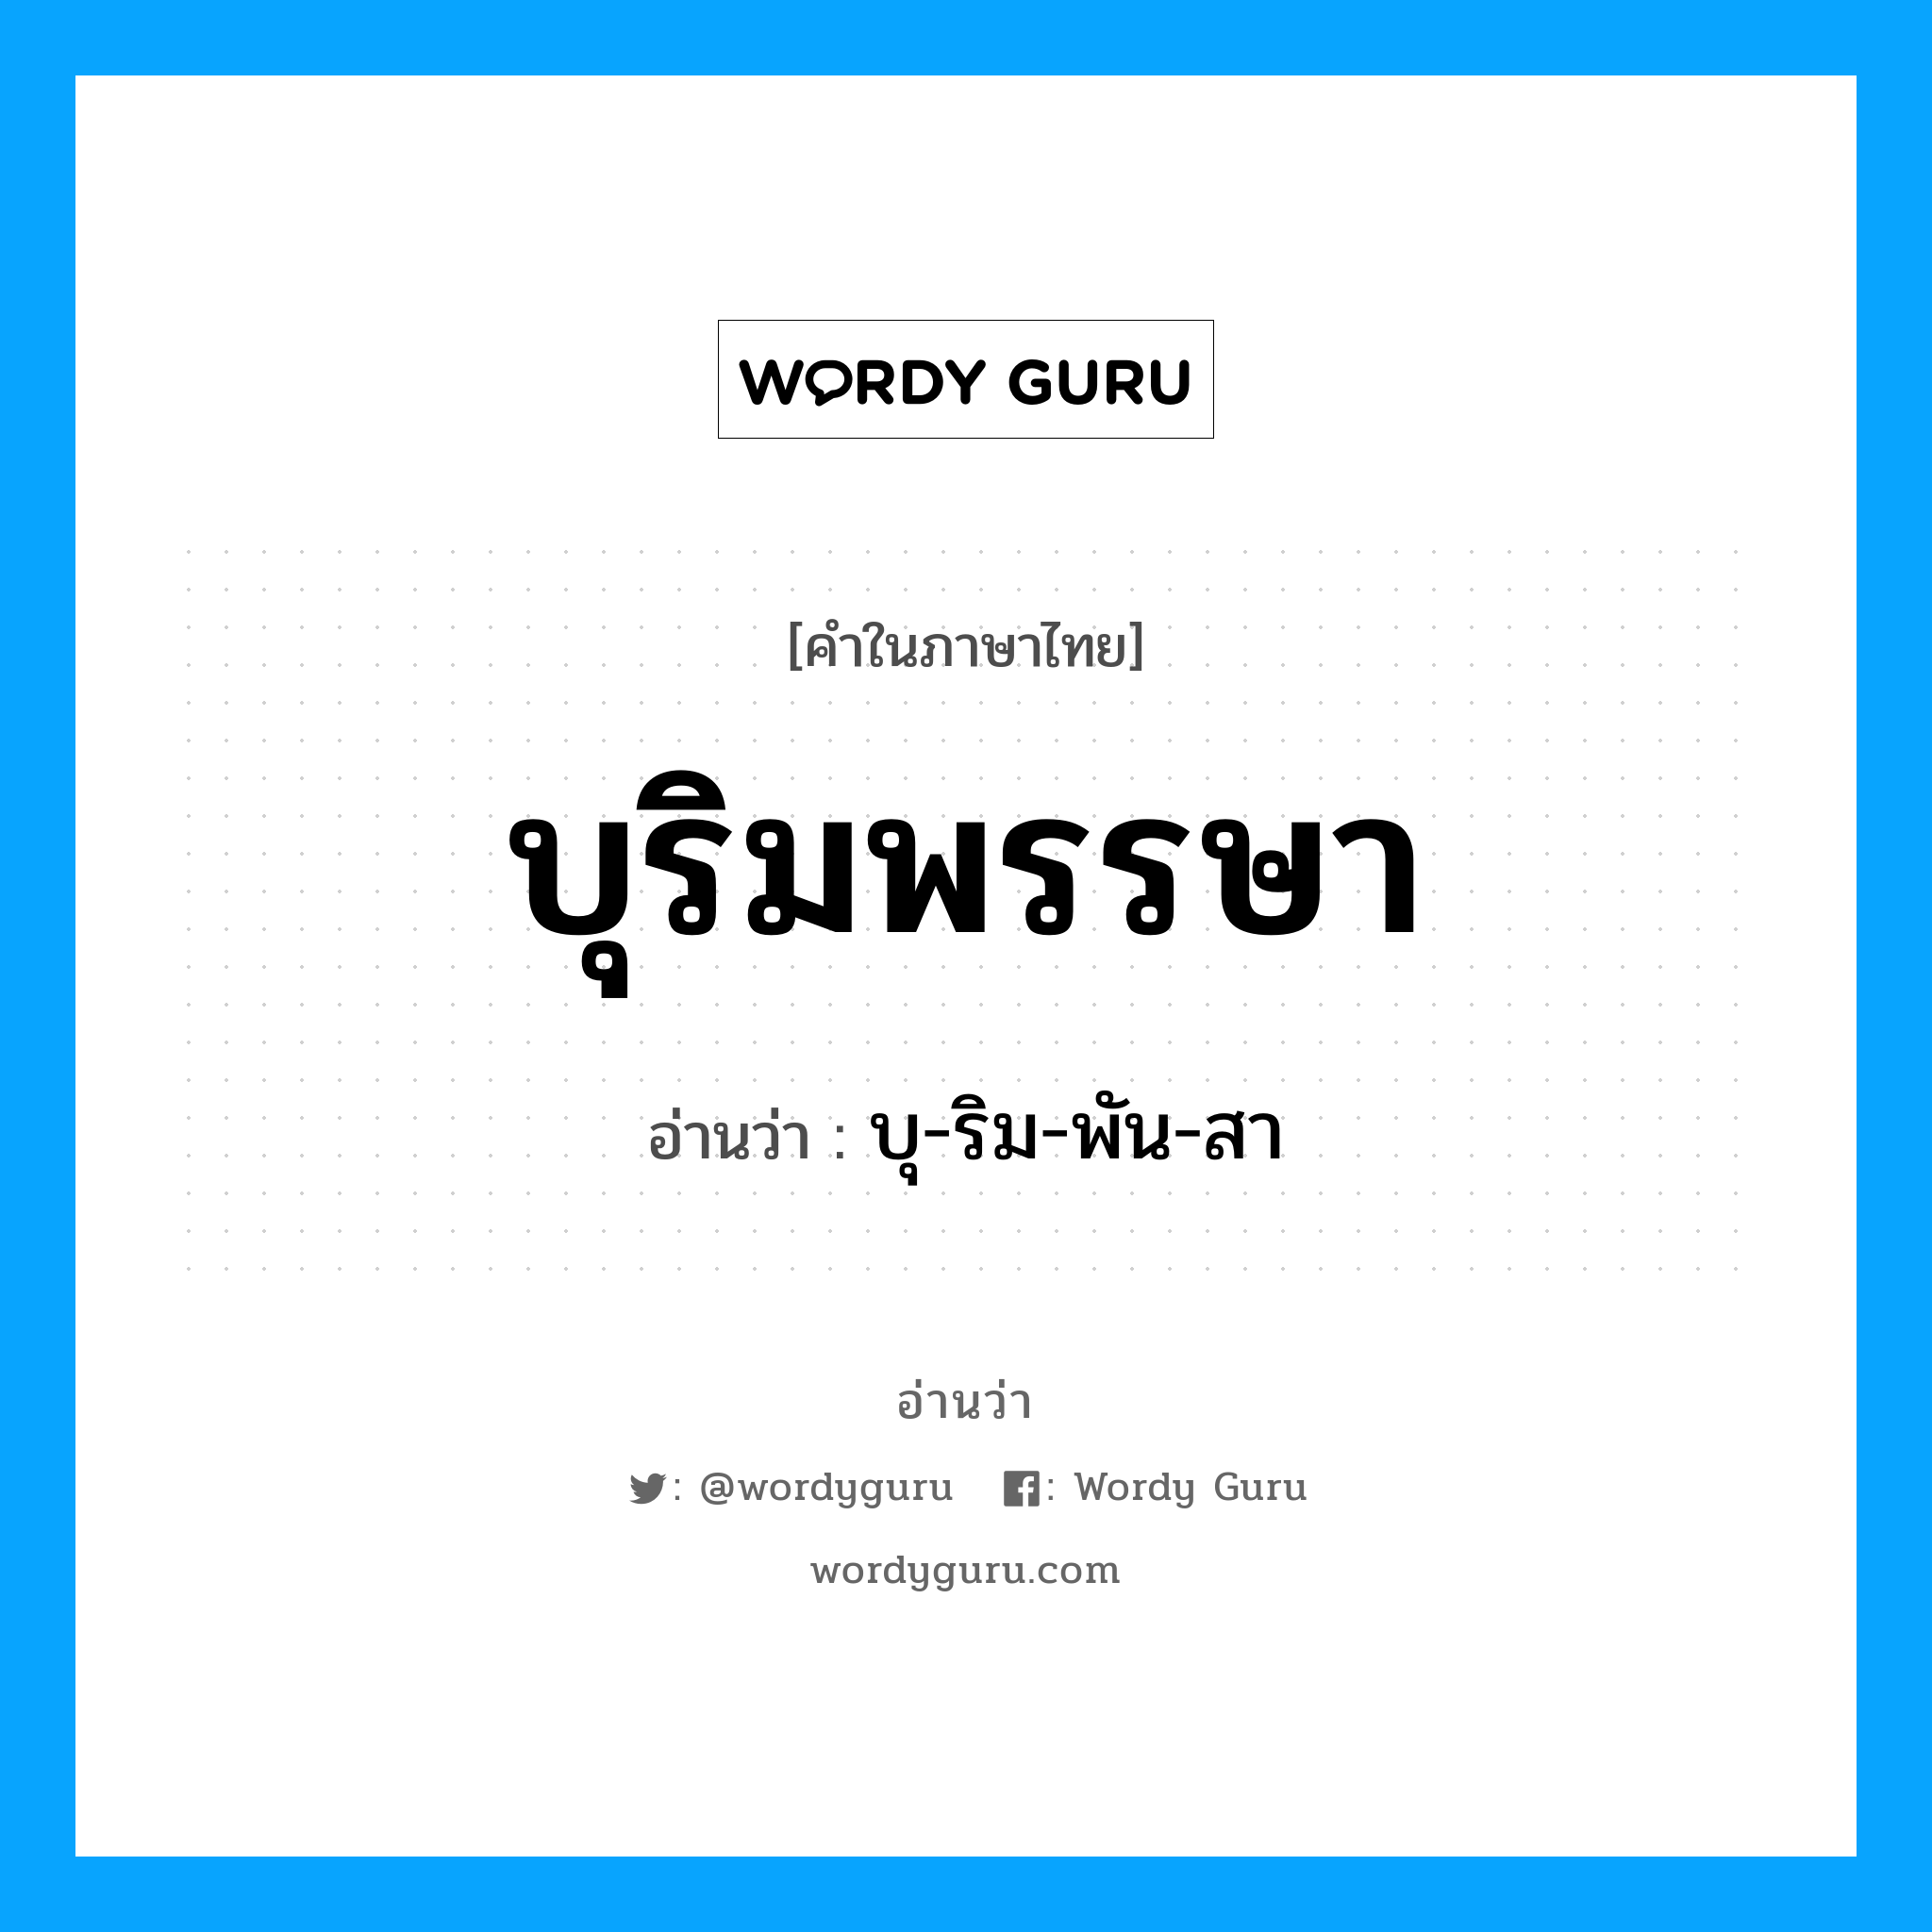 บุ-ริม-พัน-สา เป็นคำอ่านของคำไหน?, คำในภาษาไทย บุ-ริม-พัน-สา อ่านว่า บุริมพรรษา